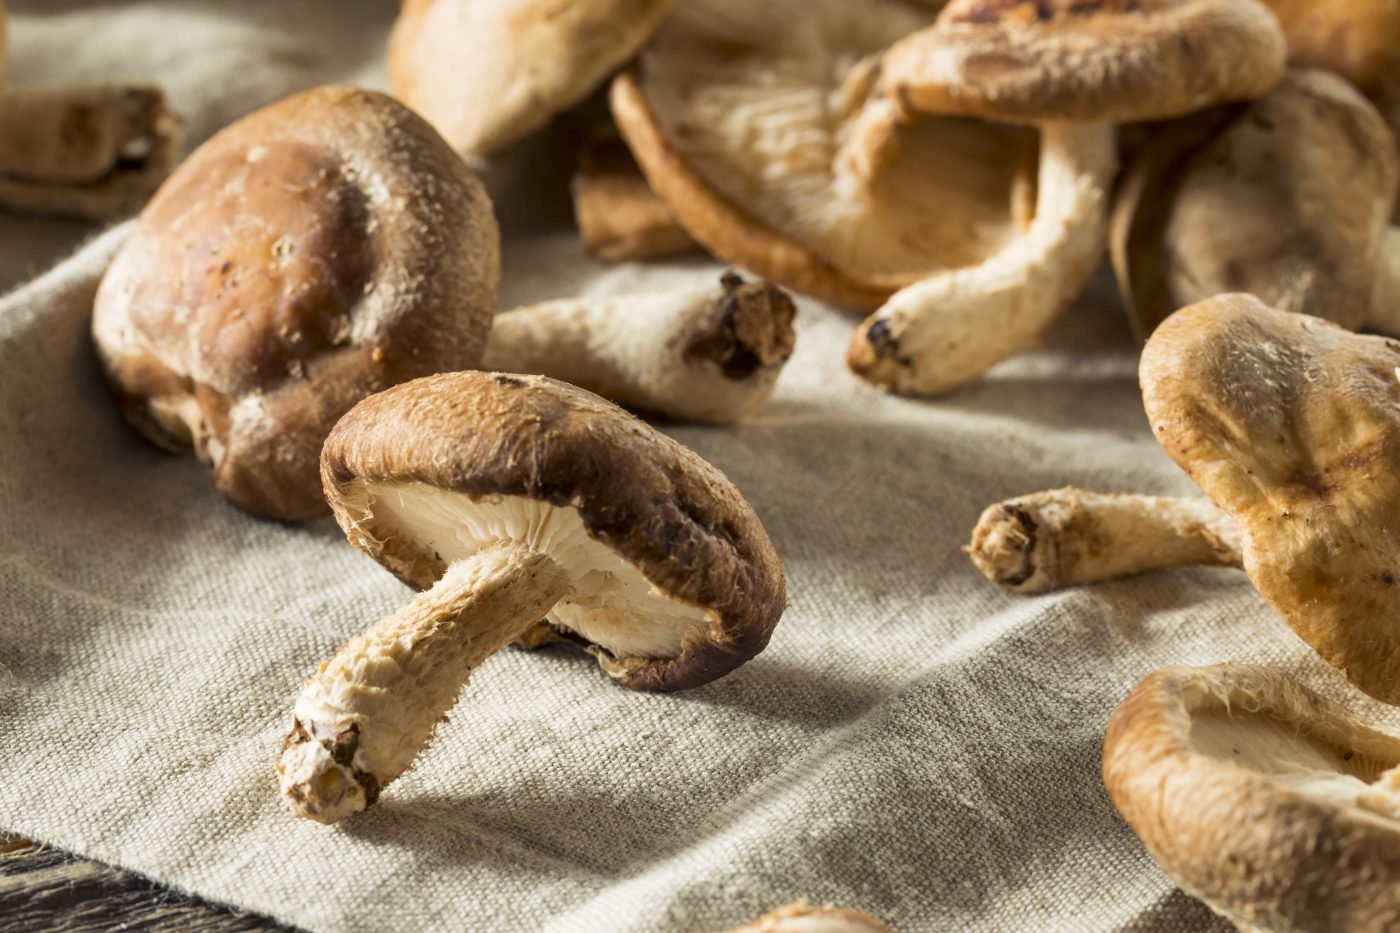 Shitake: Os benefícios do cogumelo e como inclui-lo na dieta - Vitat